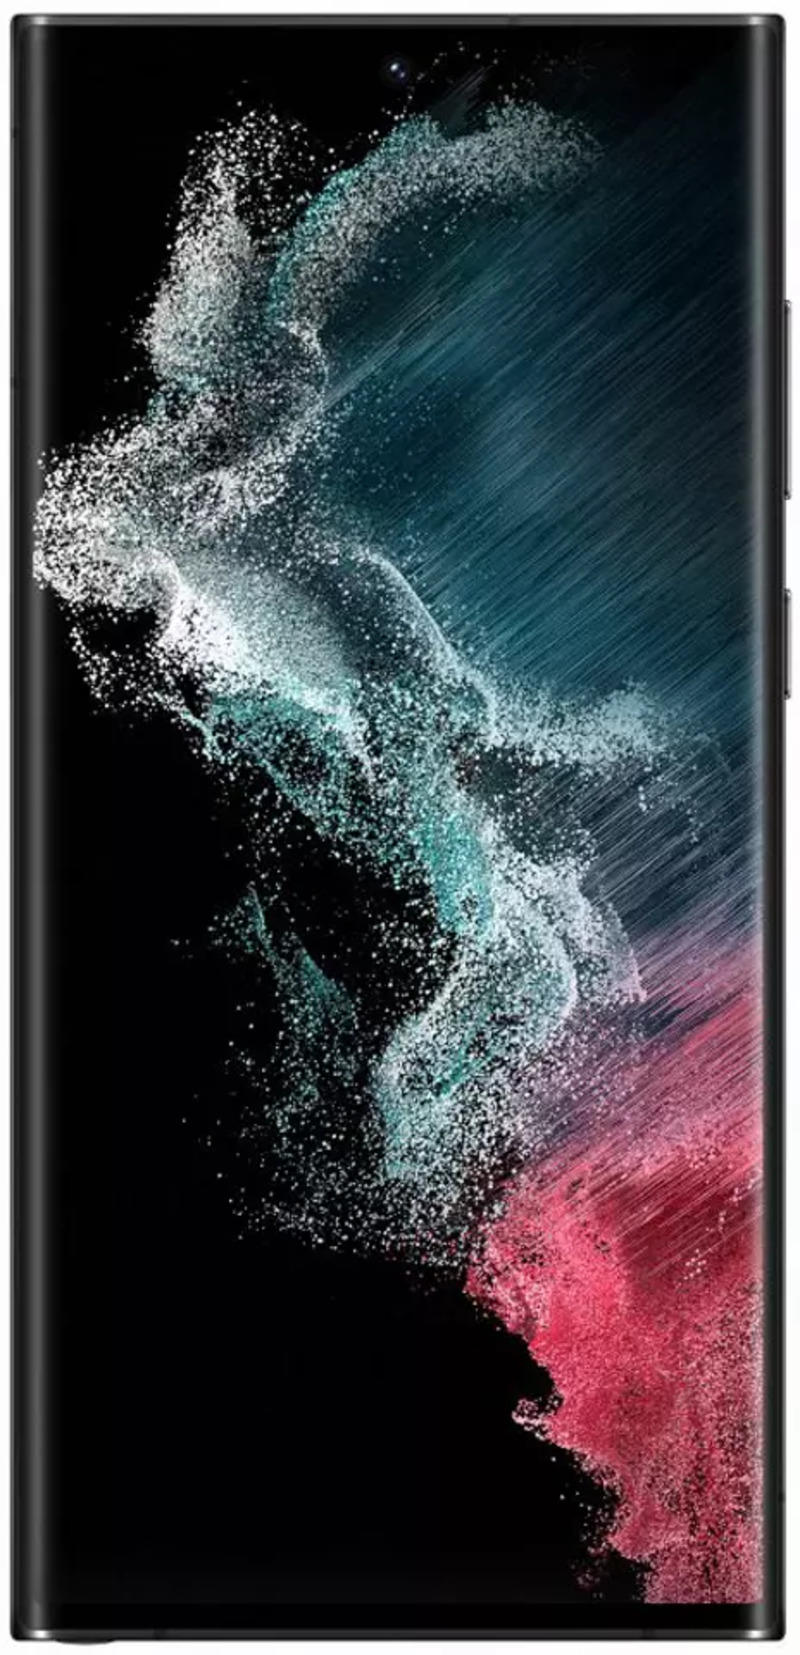 Samsung Galaxy S22 Ultra 5G 256 GB là chiếc điện thoại mang đến trải nghiệm tuyệt vời nhất cho người dùng. Từ thiết kế đến cấu hình, tất cả đều ấn tượng và đáng để sở hữu. Nhấn vào hình ảnh để khám phá ngay.